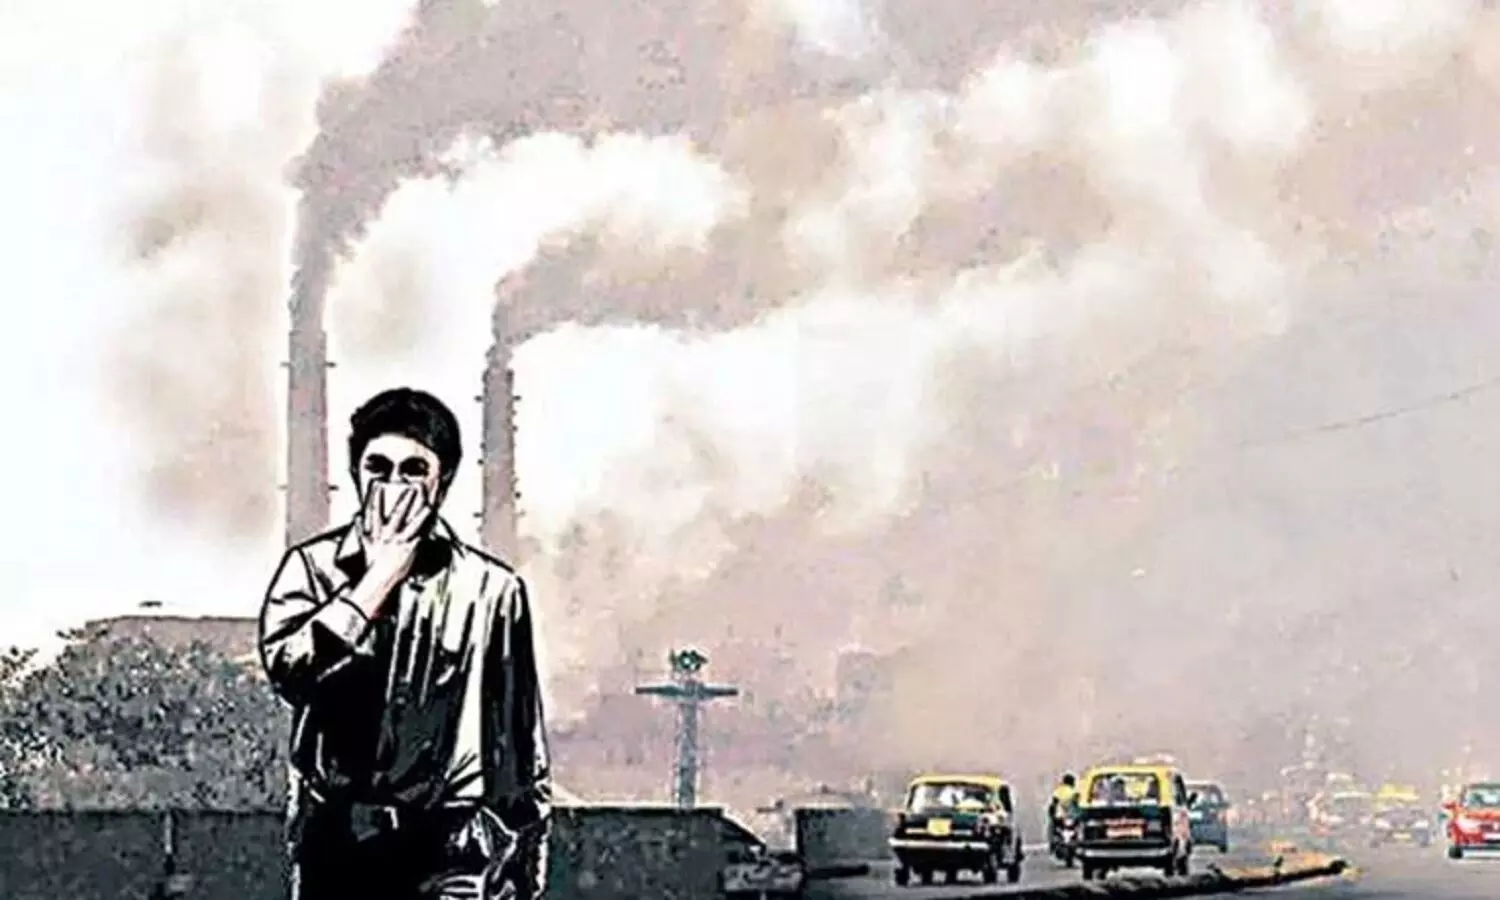 प्रदूषण के मामले में मध्य प्रदेश से दिल्ली दूर नहीं,  एमपी की हवा में जहर है